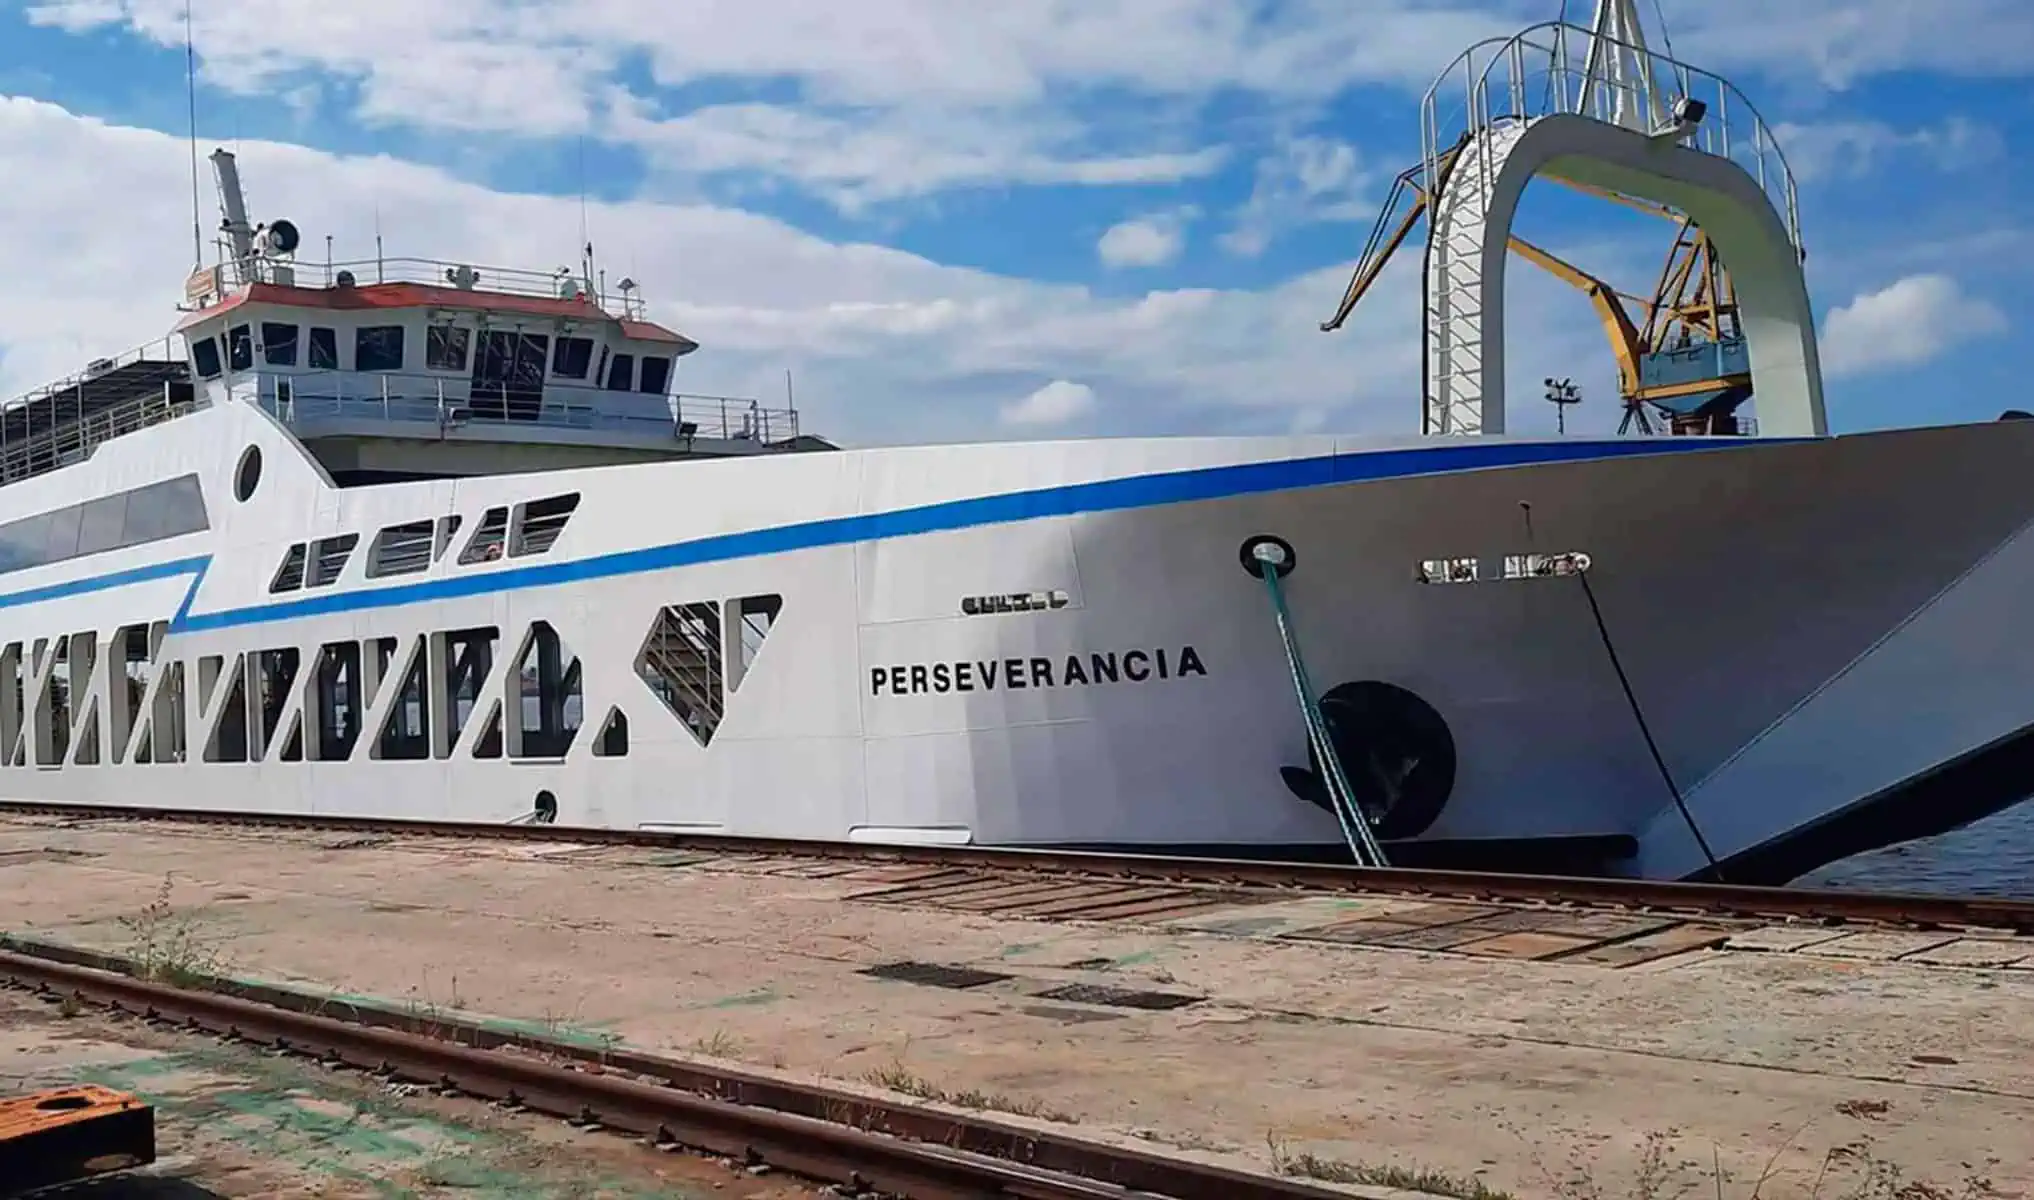 Suspendidas Operaciones del Ferry Perseverancia